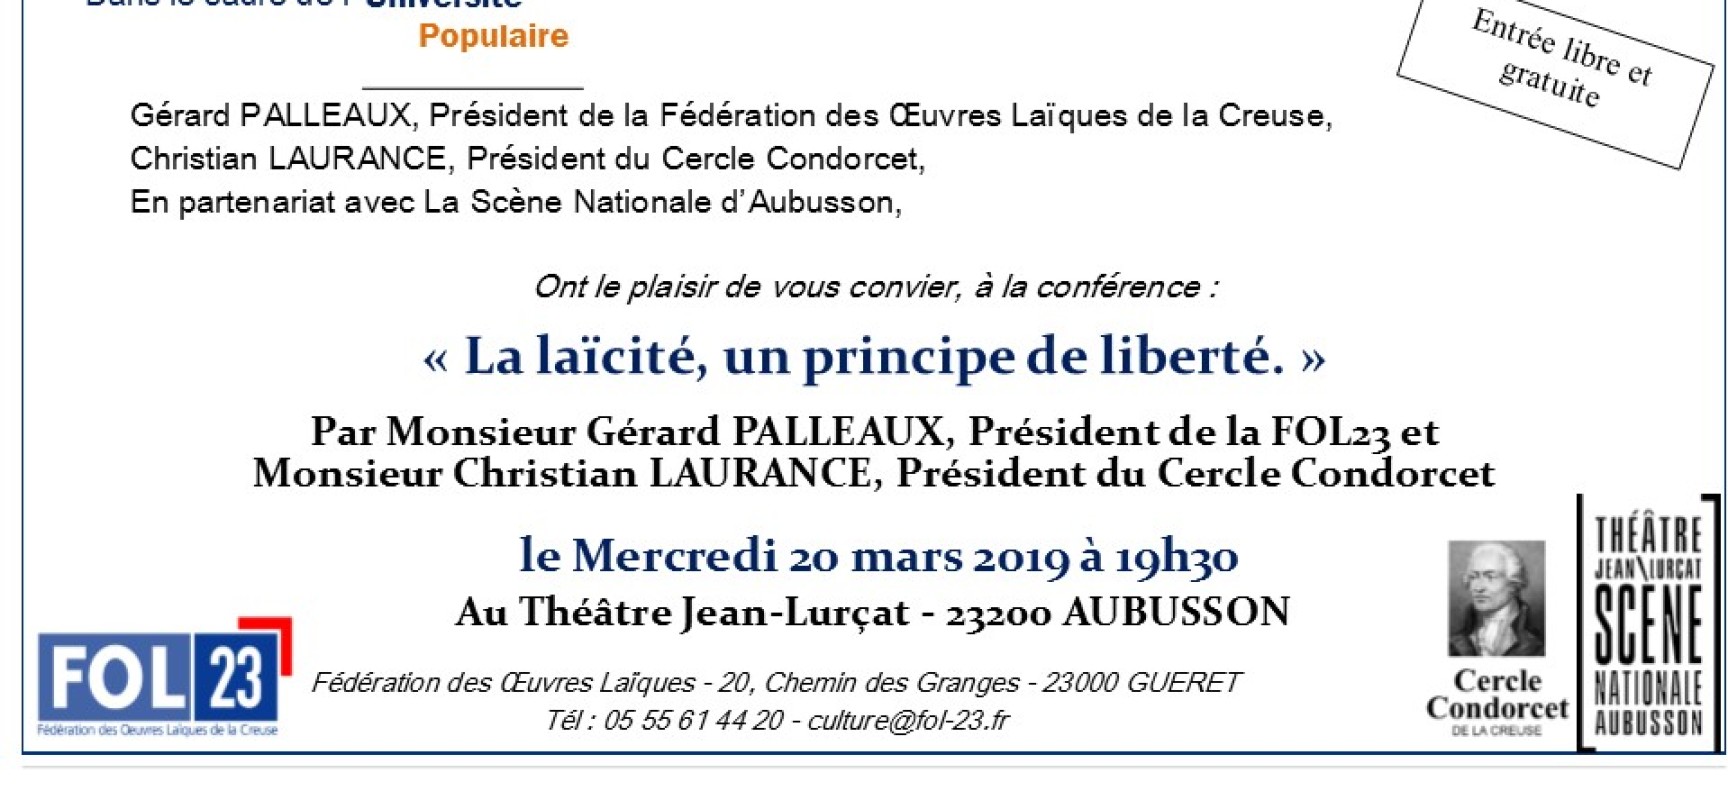 Conférence – « La Laïcité, un principe de liberté » #SNA #Aubusson